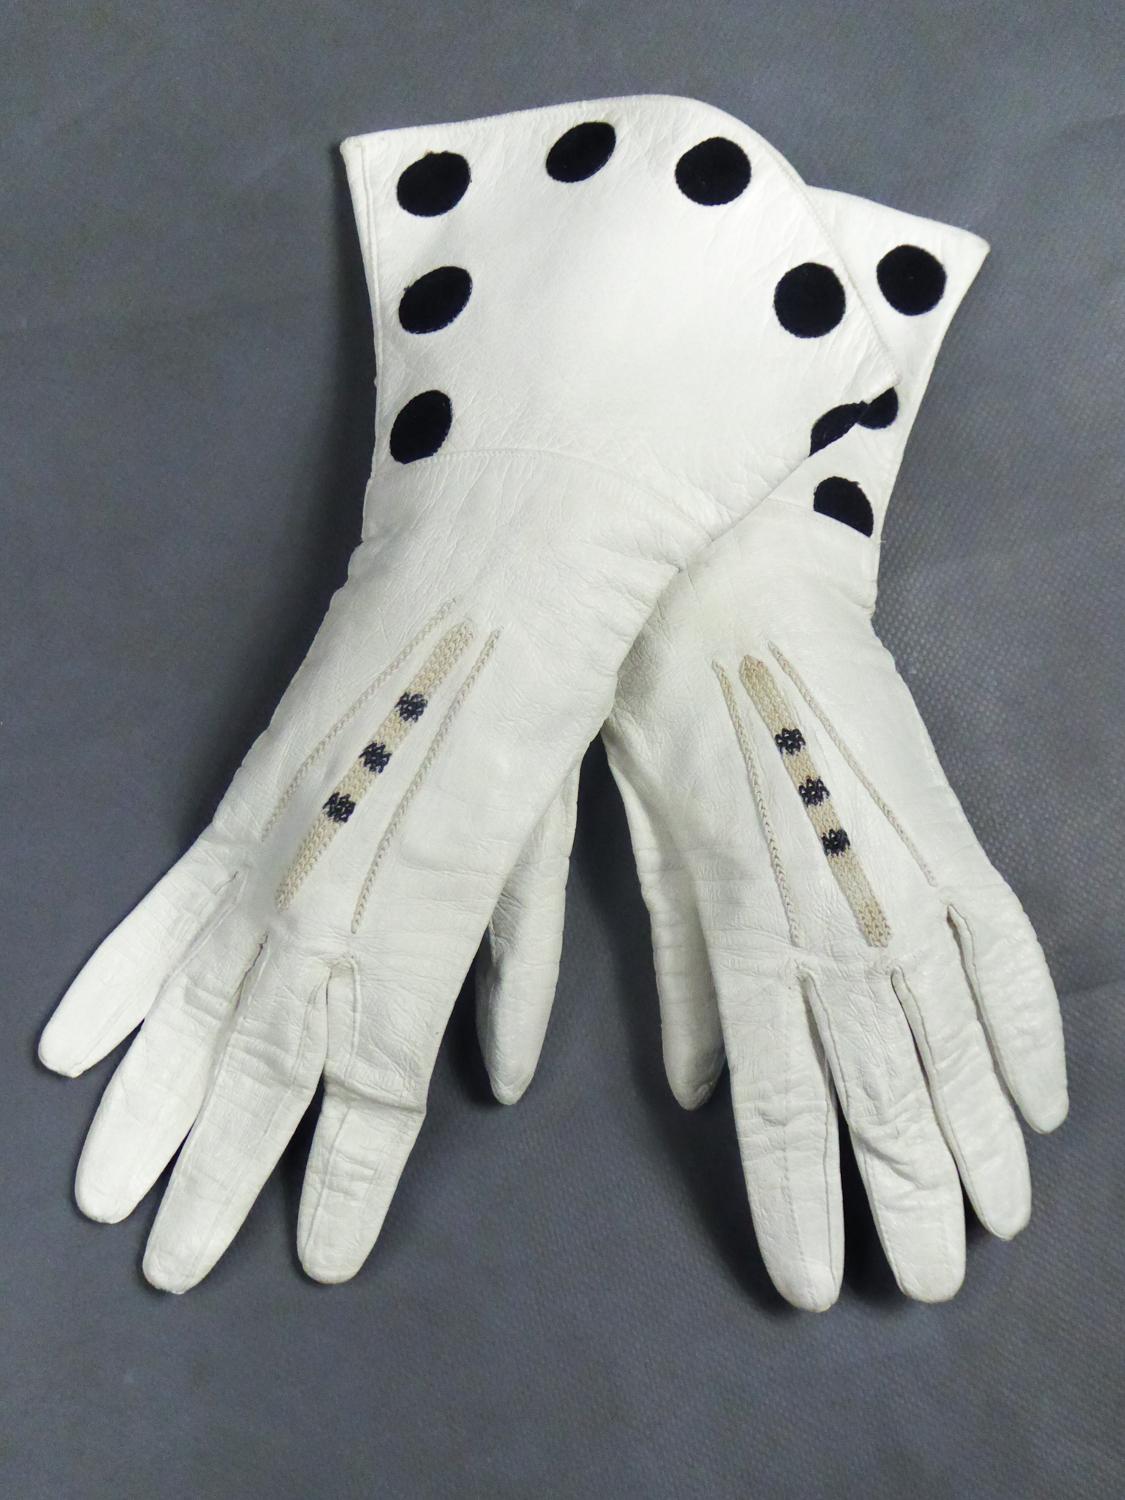 Um 1960
England

Schönes Paar zeremonieller Handschuhe aus weißem Sämischleder mit unleserlichem britischen Stempel auf der Innenseite, aus den 1960er Jahren. Elegante Stickerei aus schwarzen Baumwollkügelchen im Kettenstich. Wie neu, wahrscheinlich